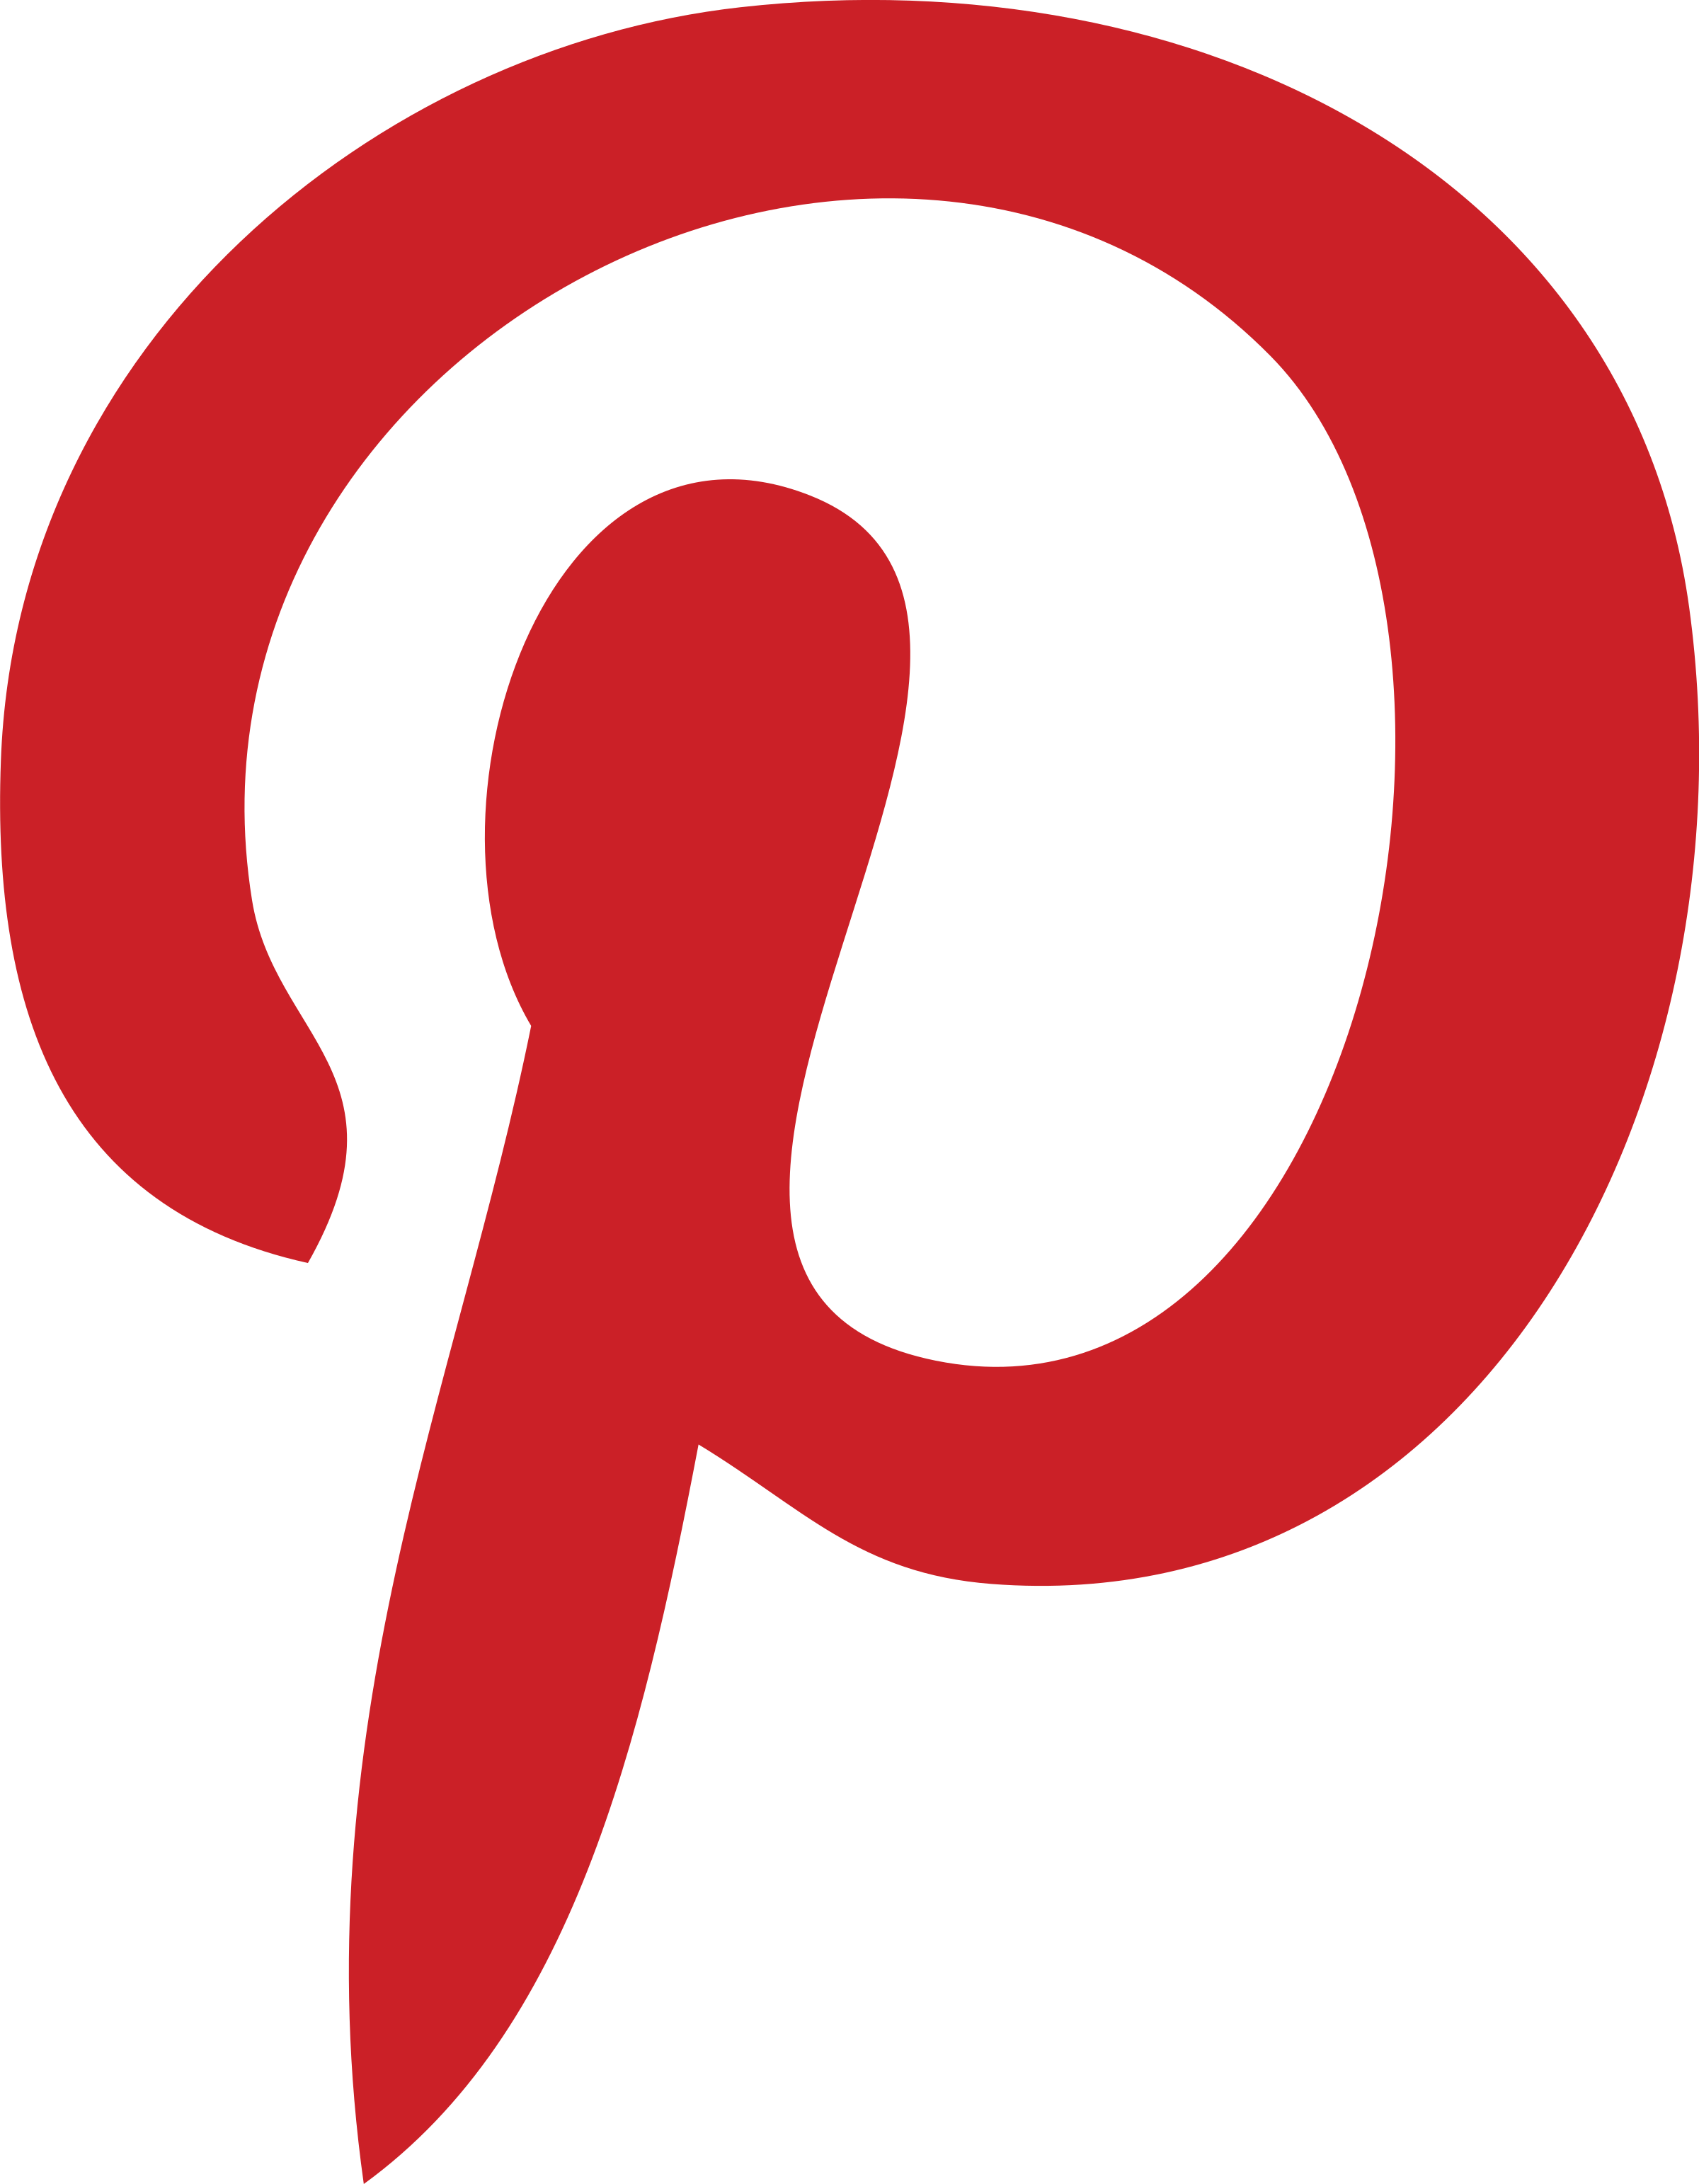 Pintrst Logo - Pinterest 2 Logo PNG Transparent & SVG Vector - Freebie Supply